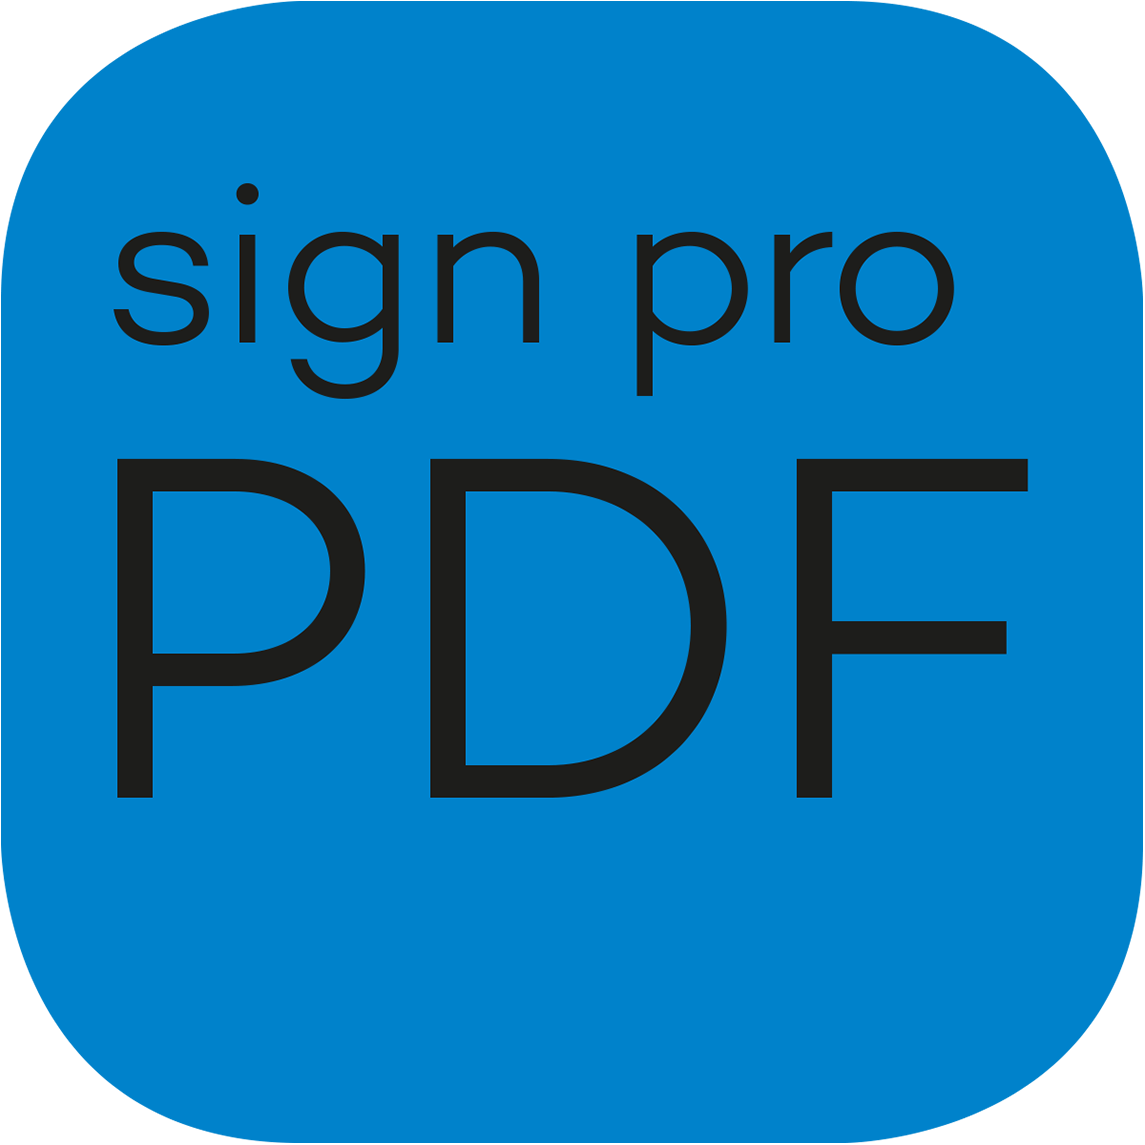 Wacom sign pro pdf software download